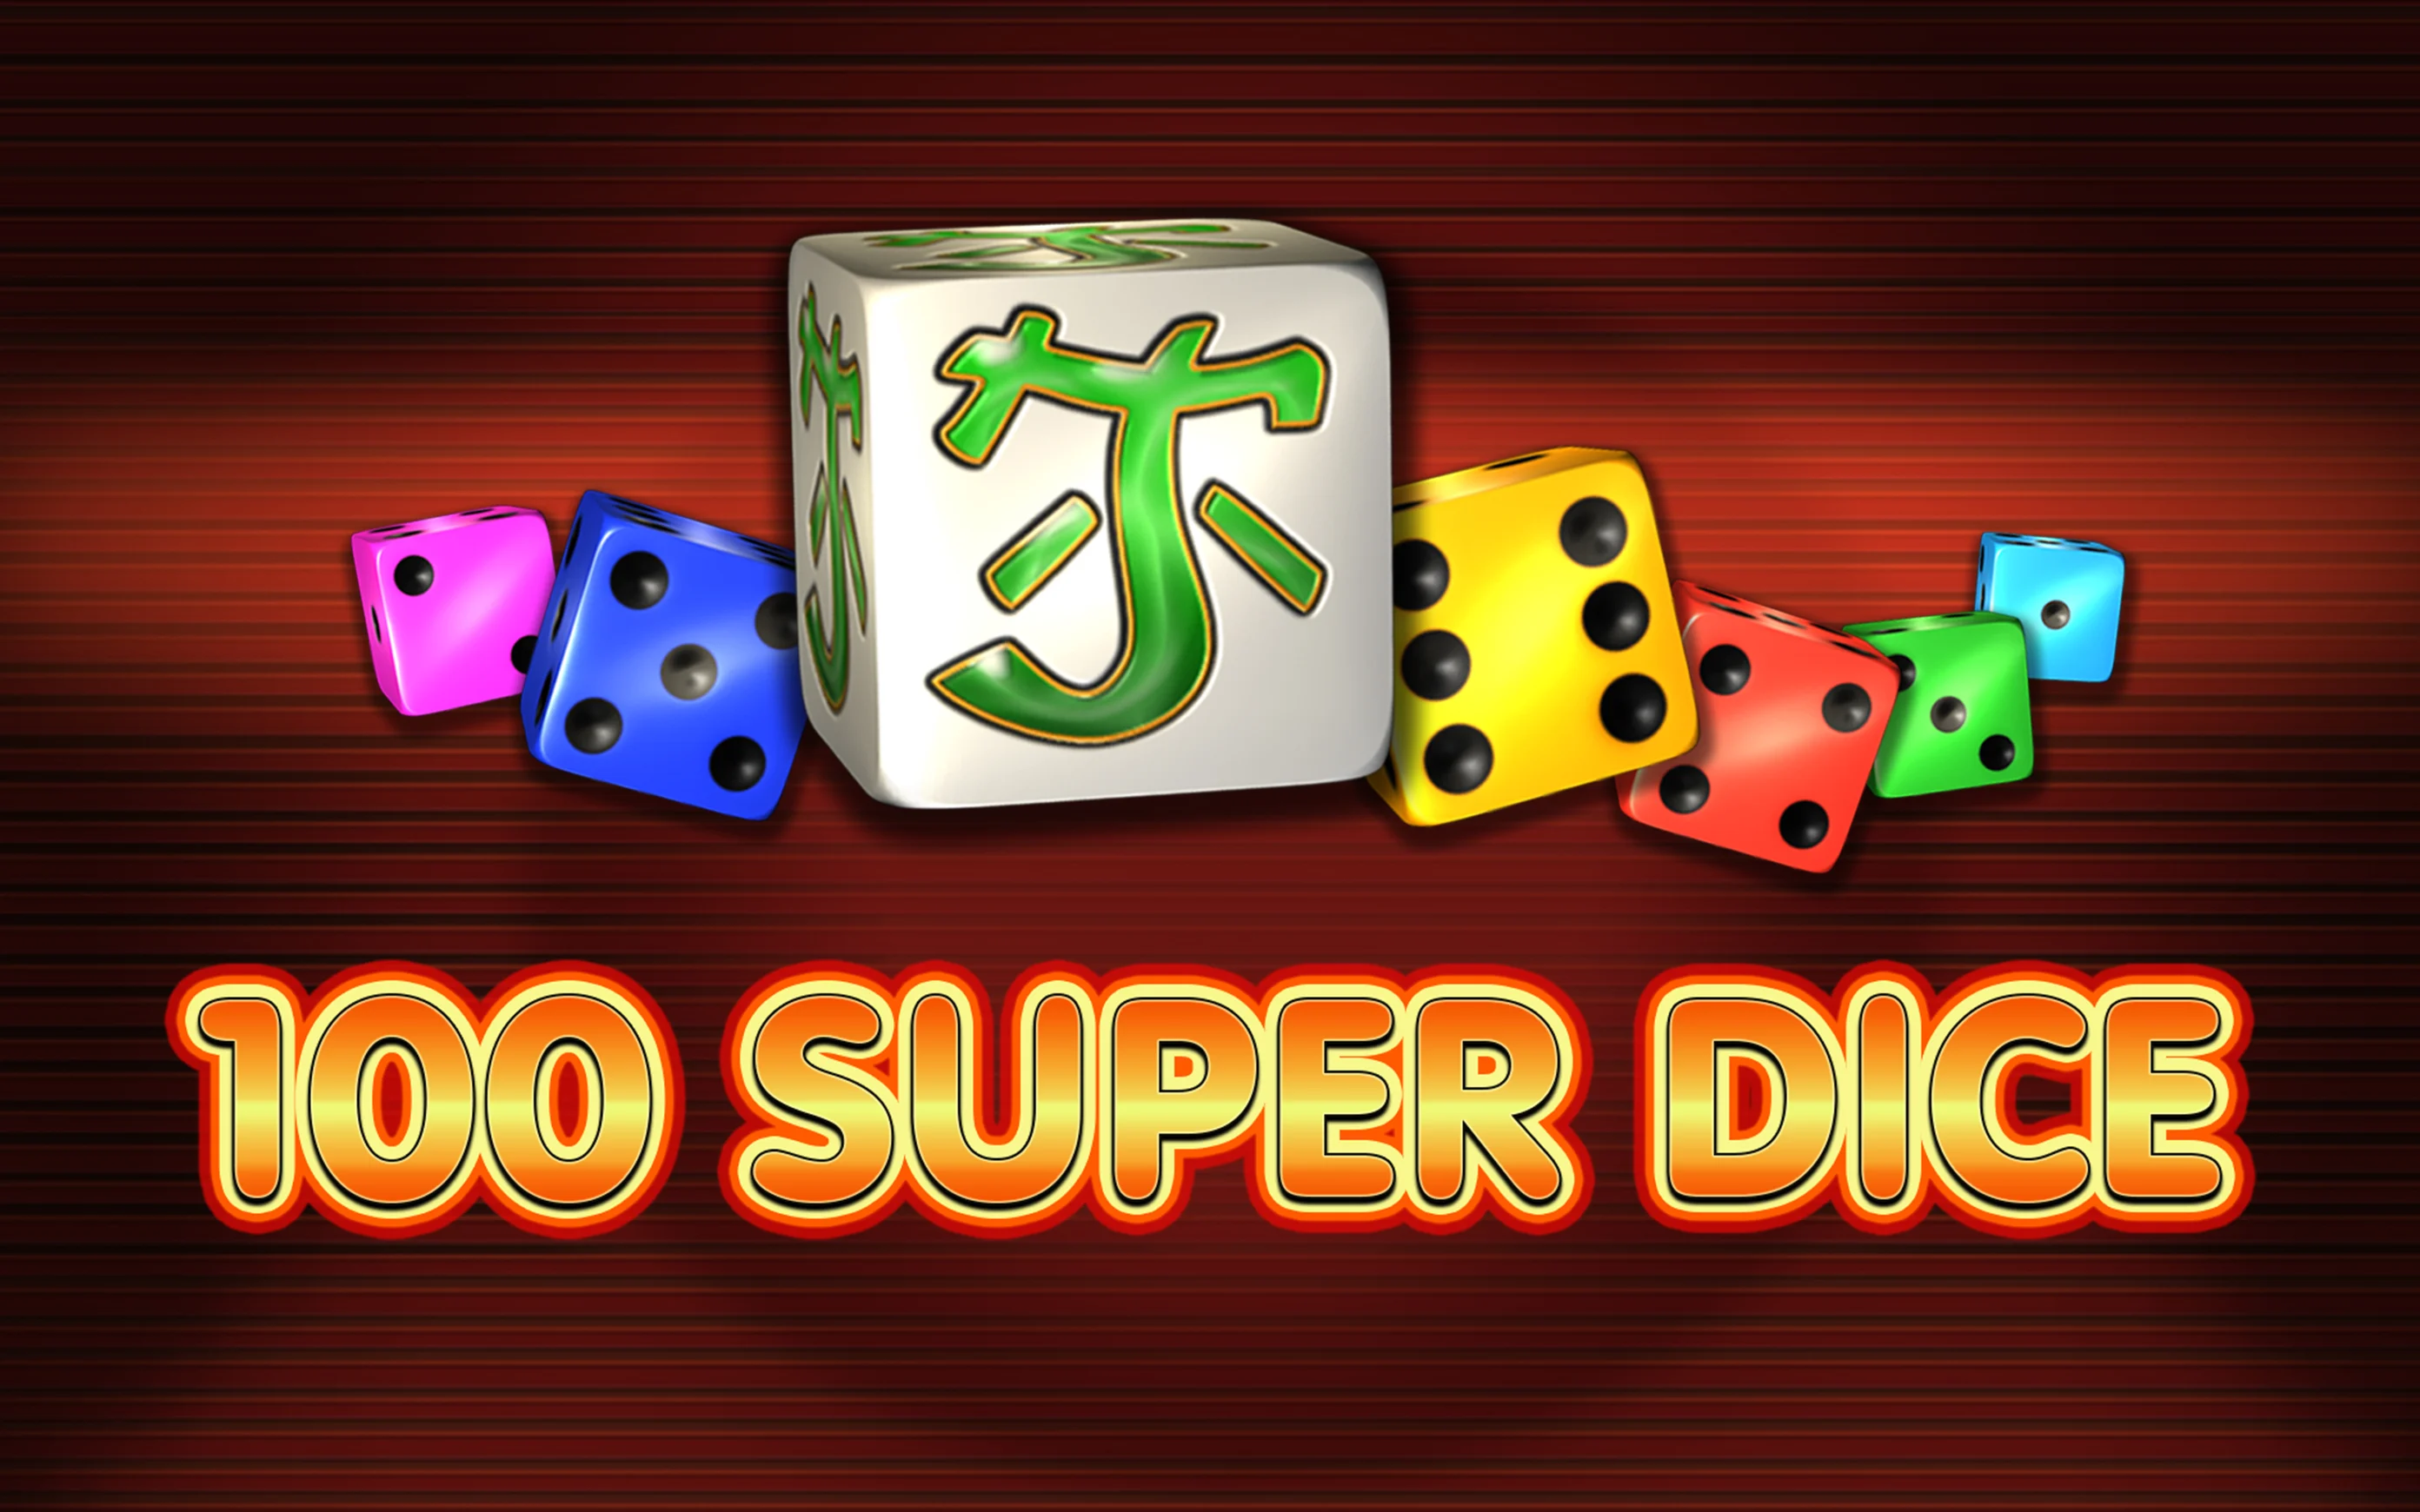 Gioca a 100 Super Dice sul casino online Starcasino.be